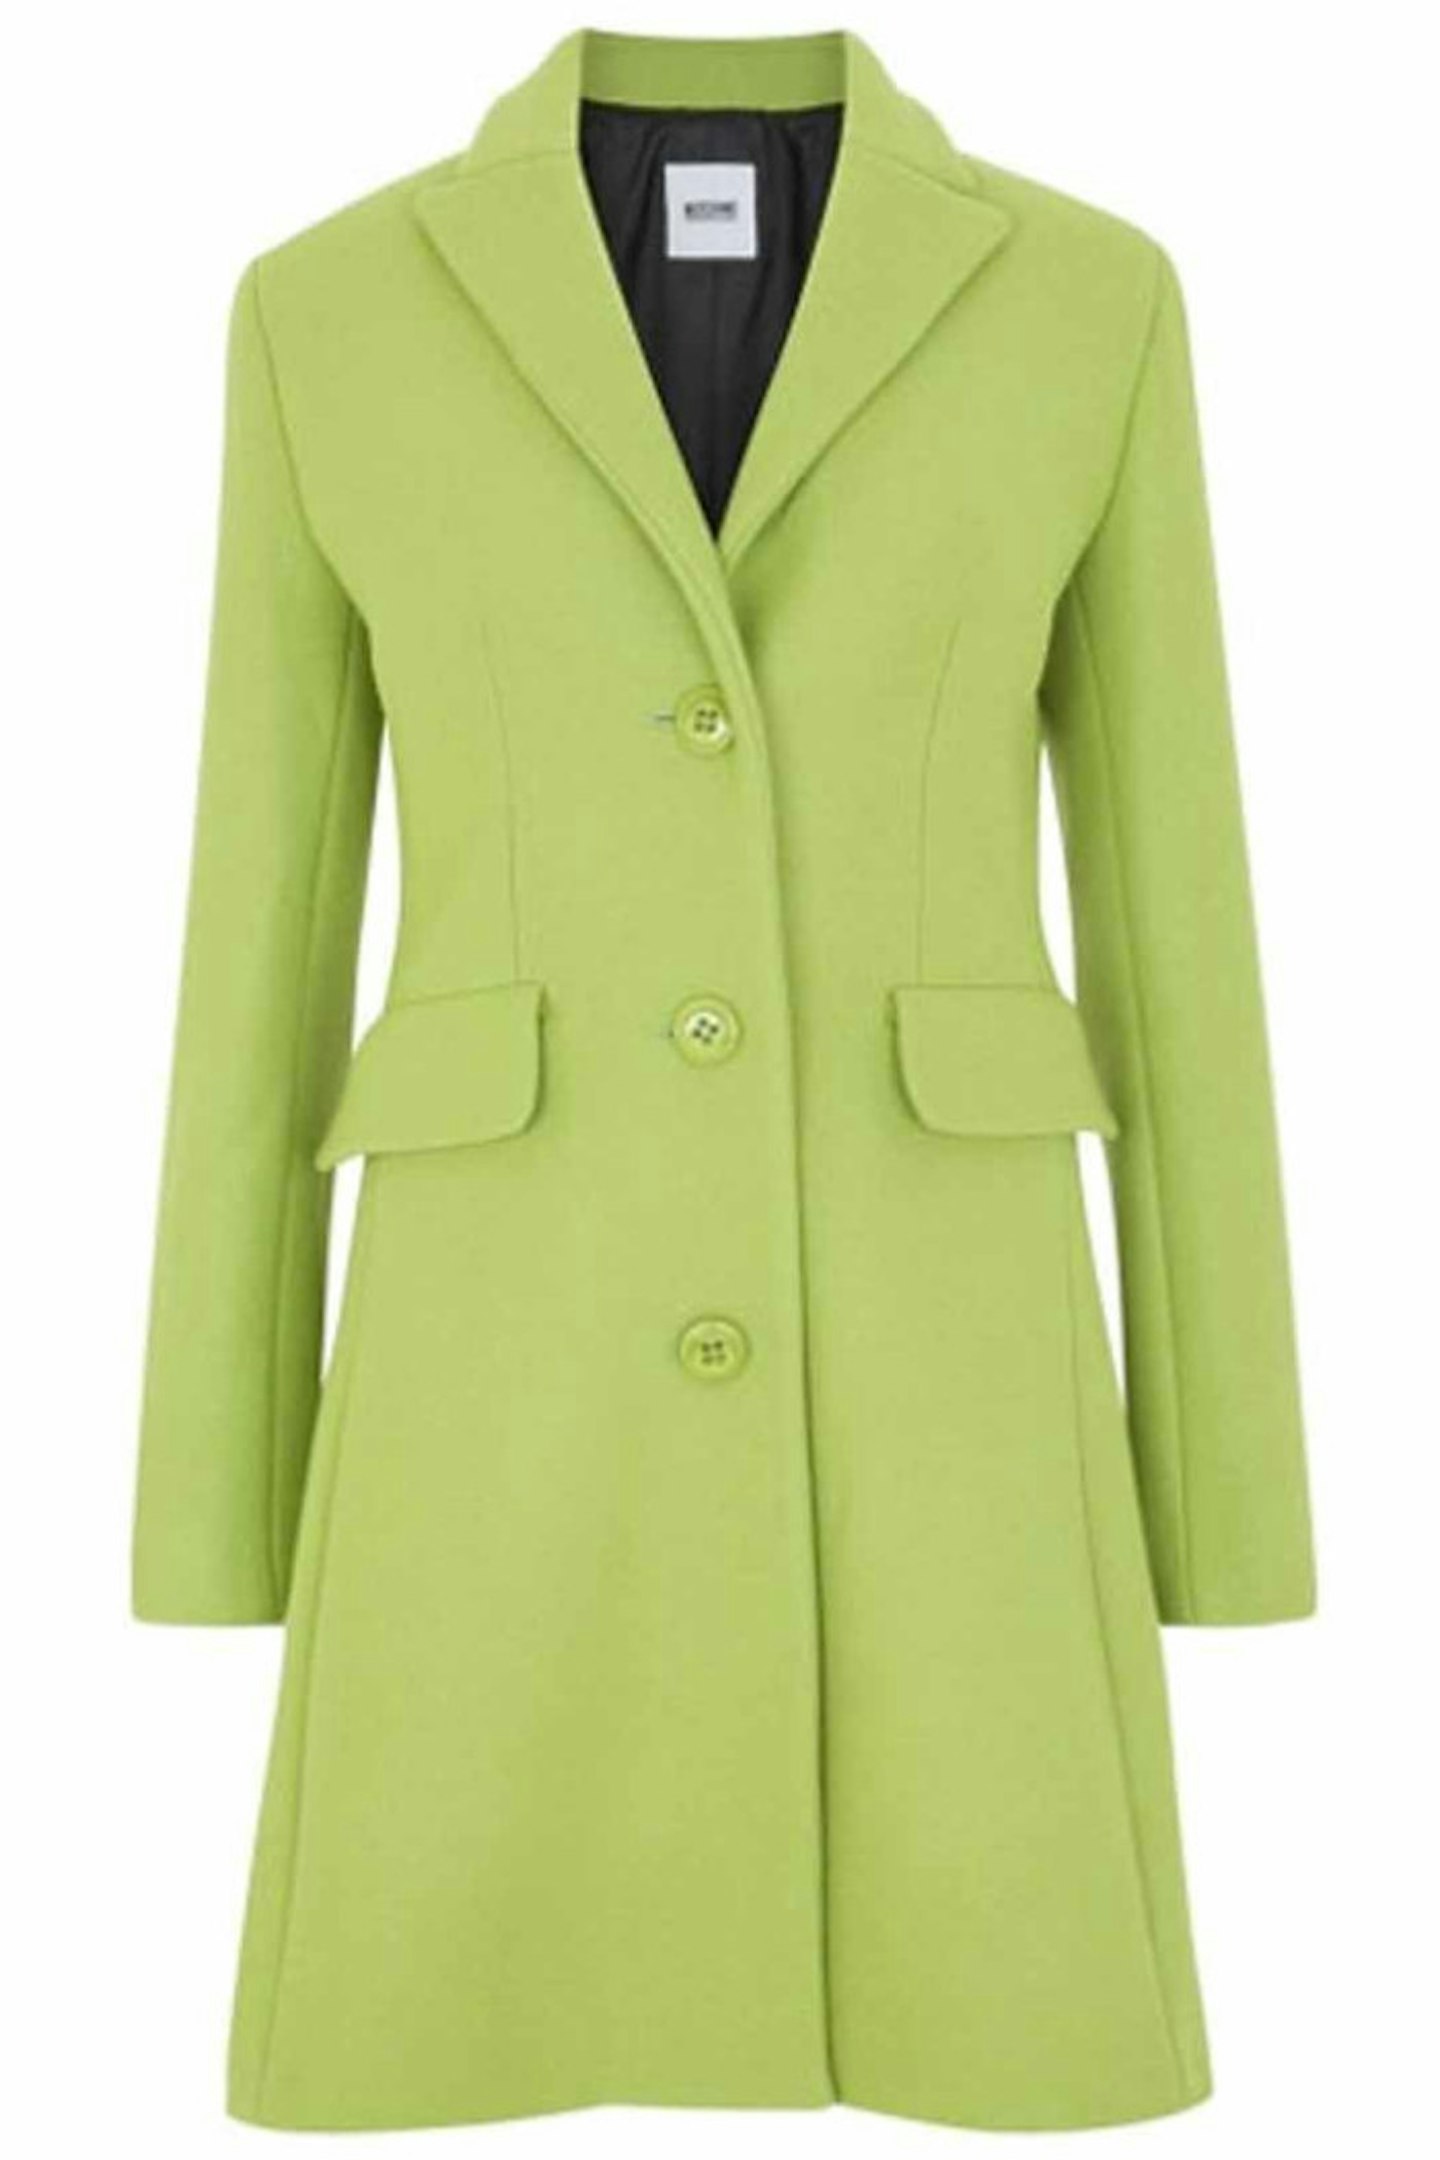 colourful coats 4